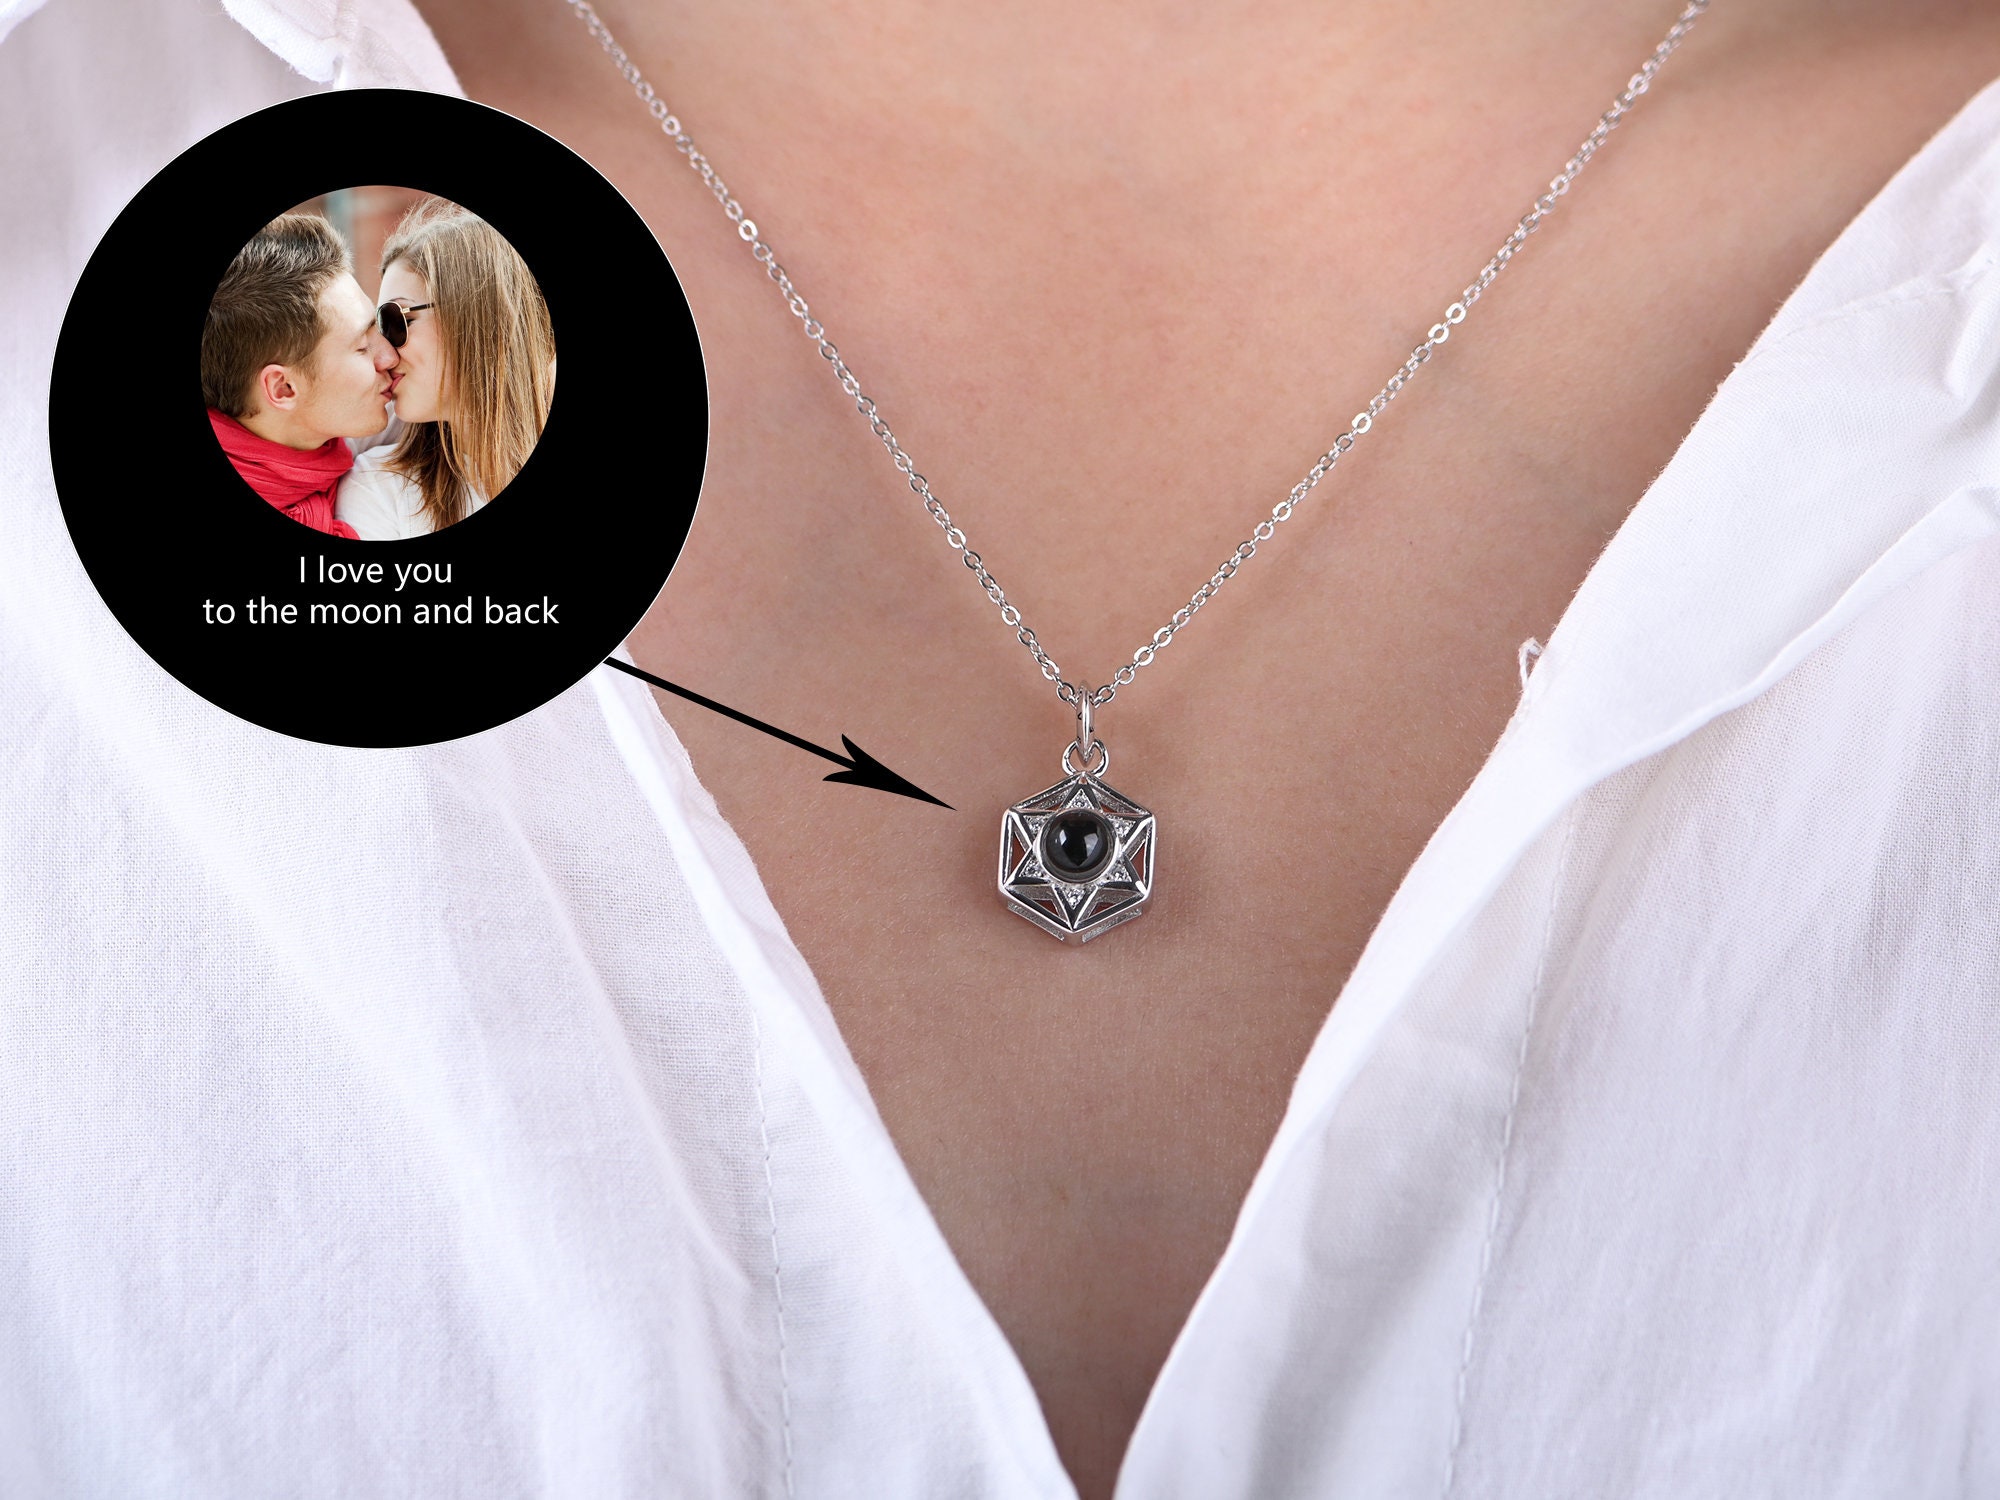 Jennifer Heart Hidden Photo Necklace – Myone Jewelry Worldwide